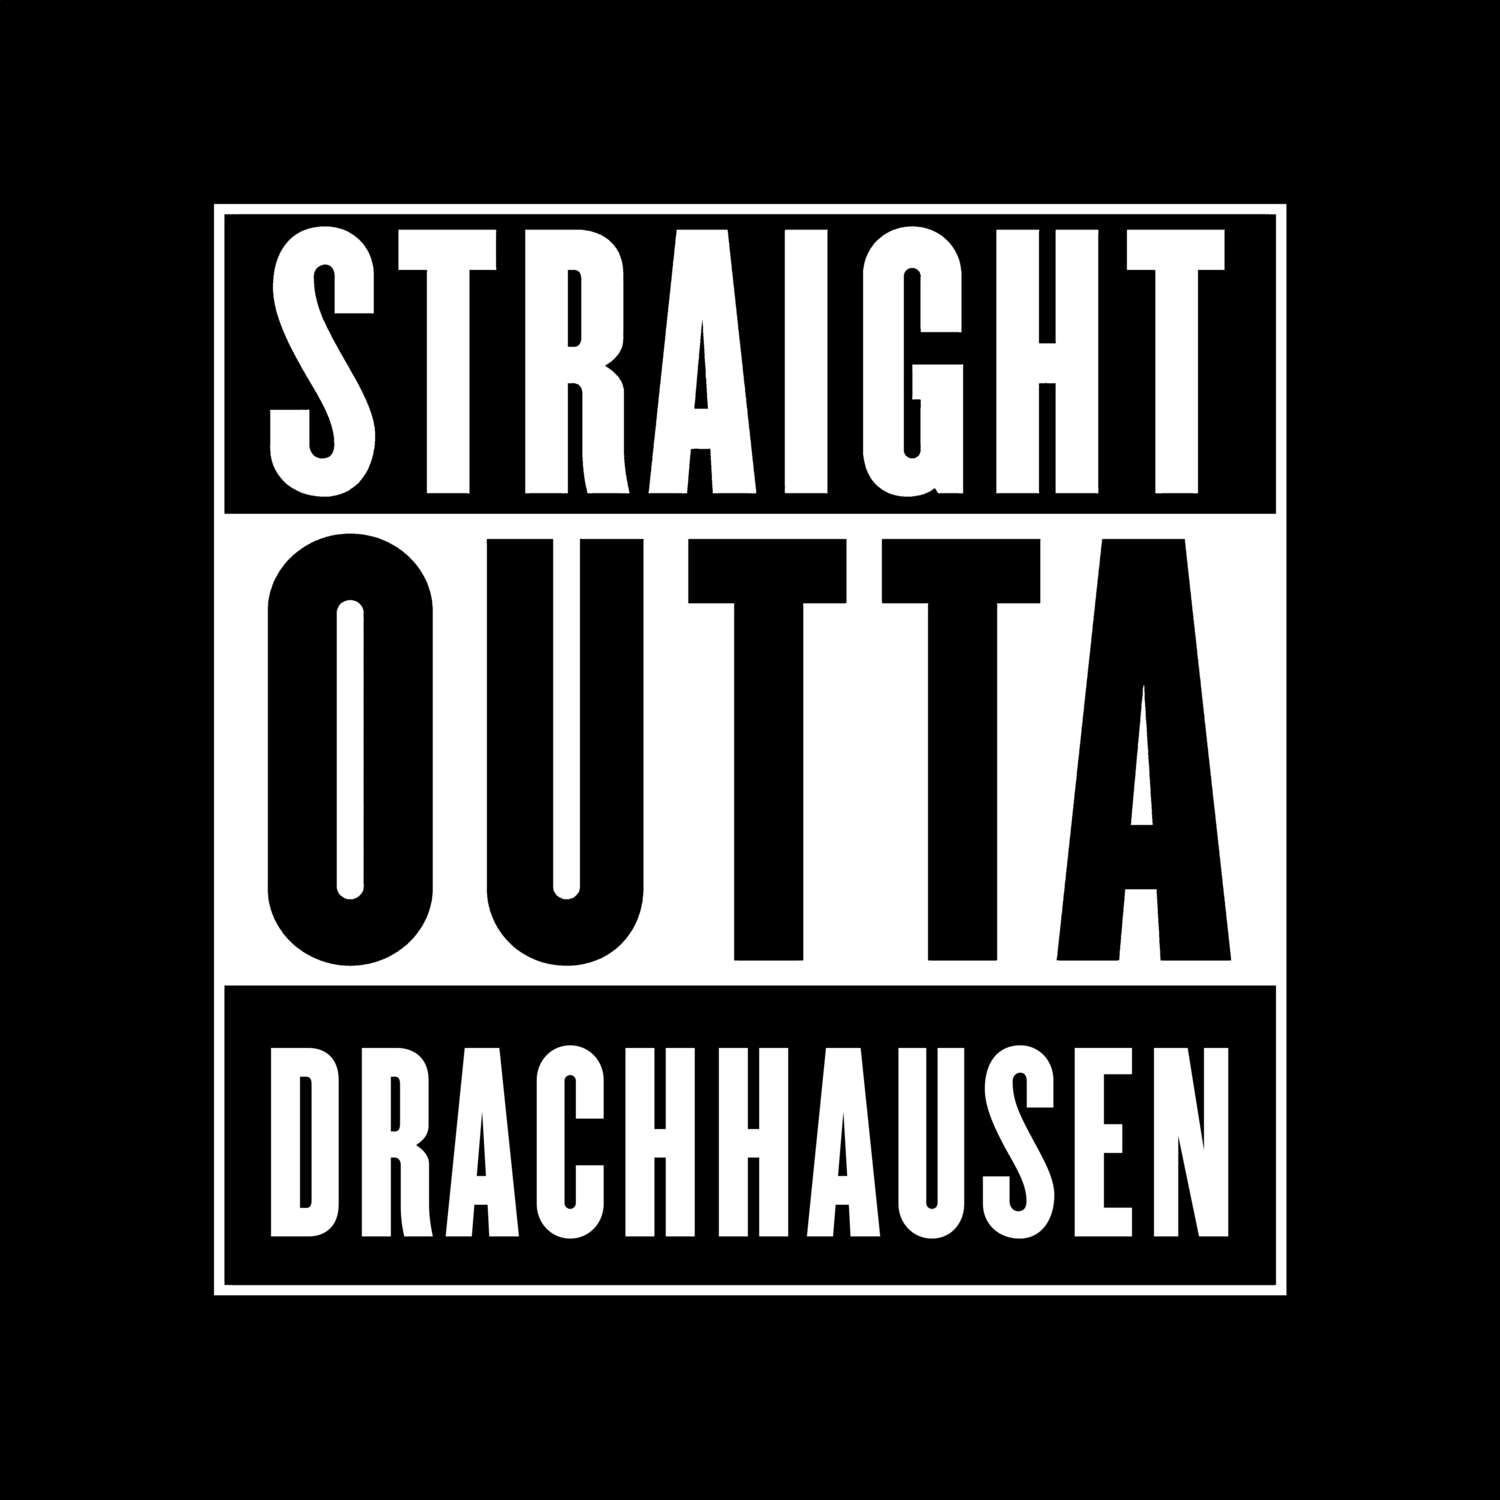 Drachhausen T-Shirt »Straight Outta«